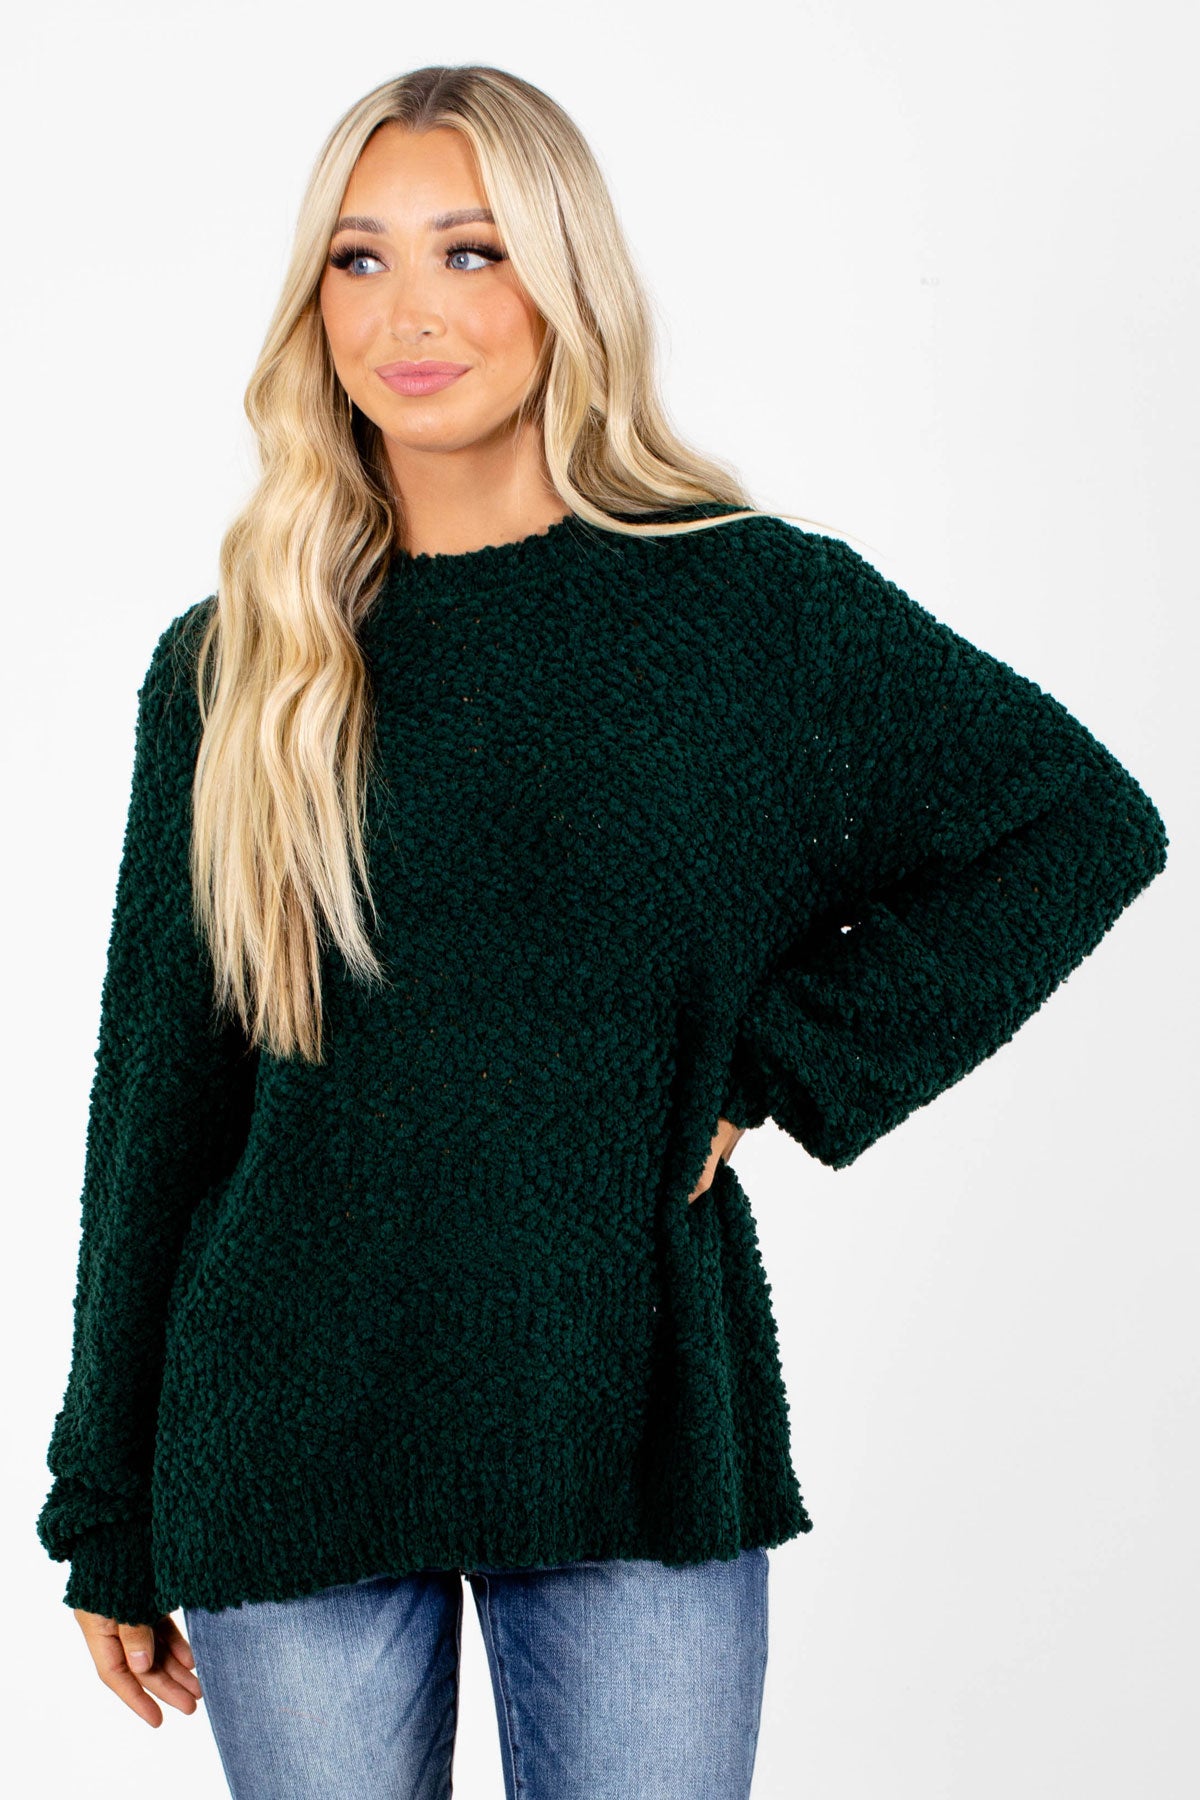 Dark Green Women's Sweater